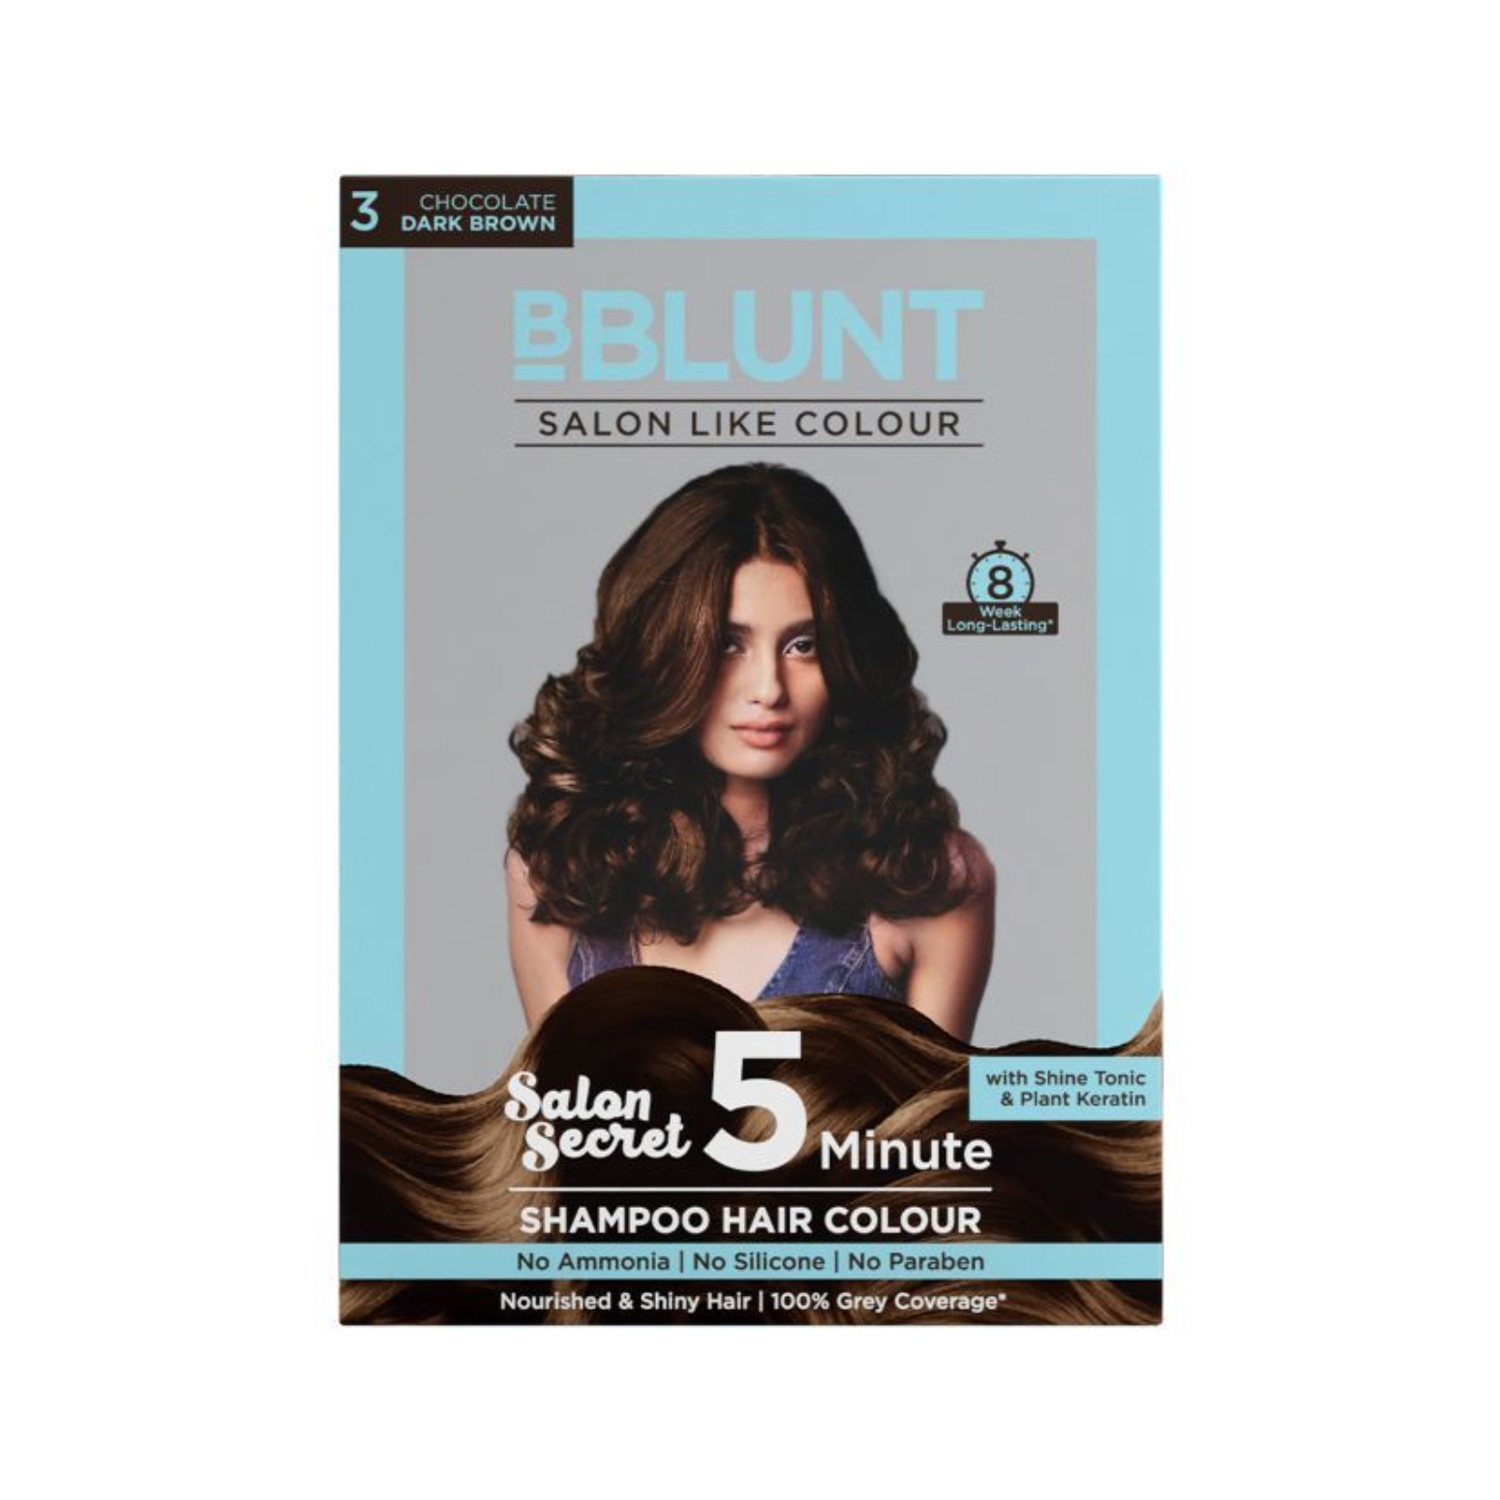 BBlunt | BBlunt 5 Minute Shampoo Hair Colour - 03 Chocolate Dark Brown (5Pcs)